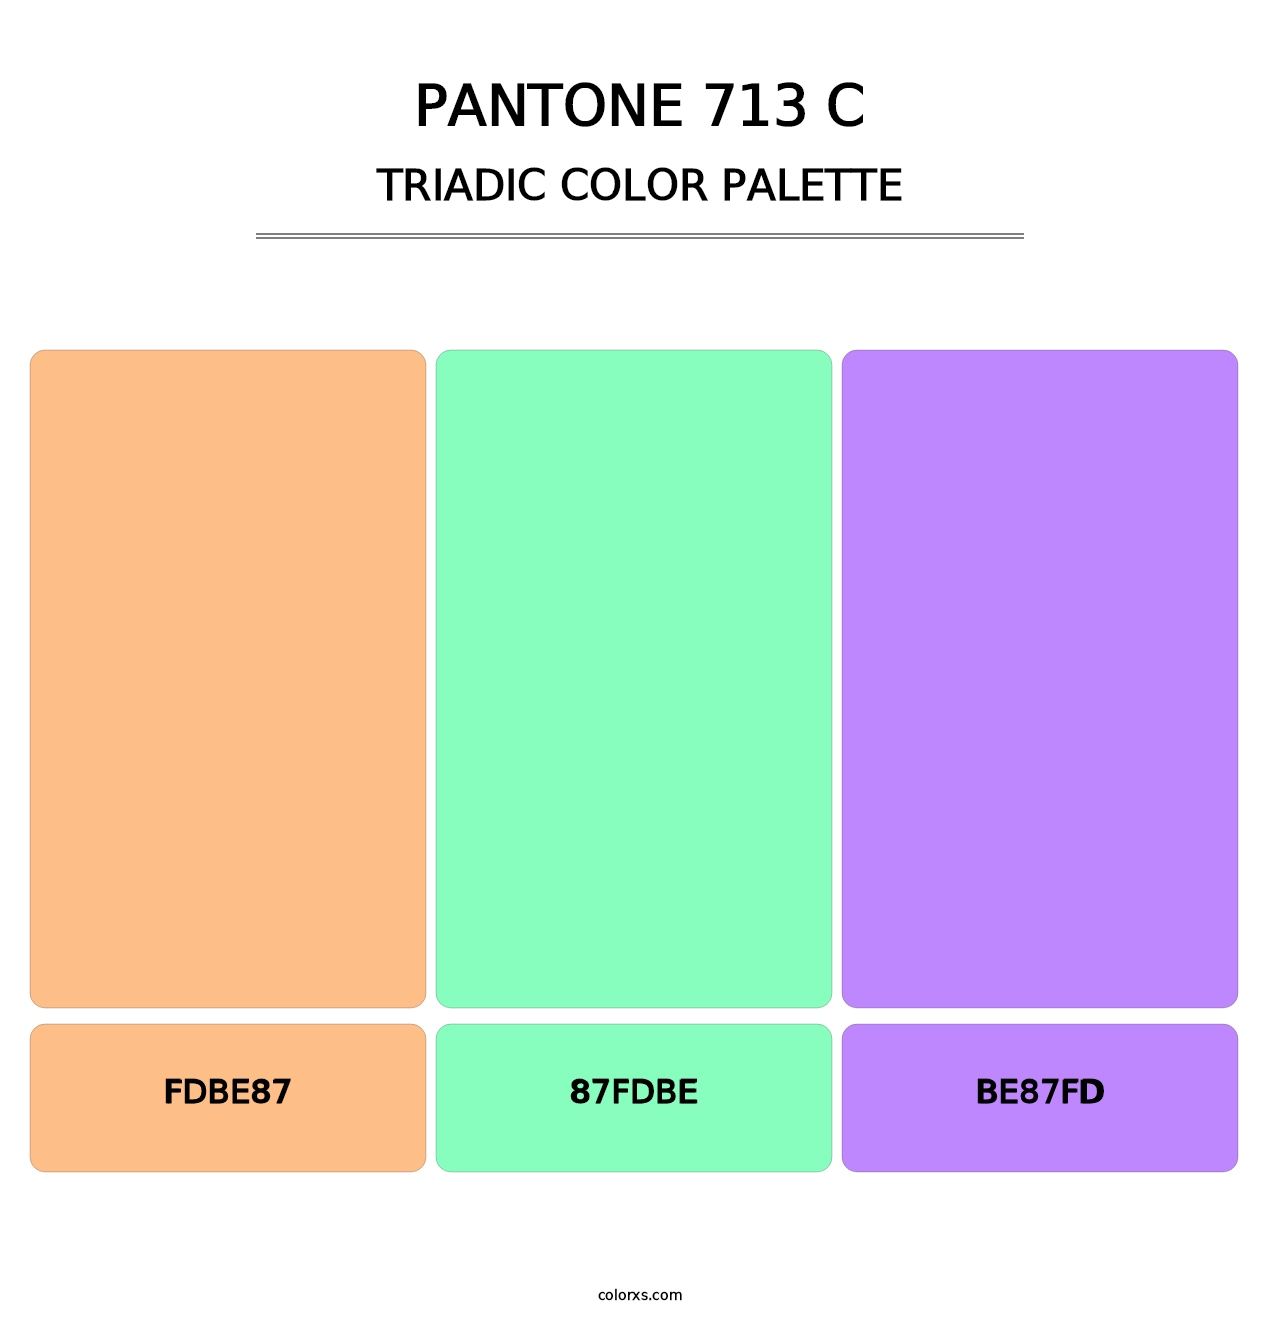 PANTONE 713 C - Triadic Color Palette